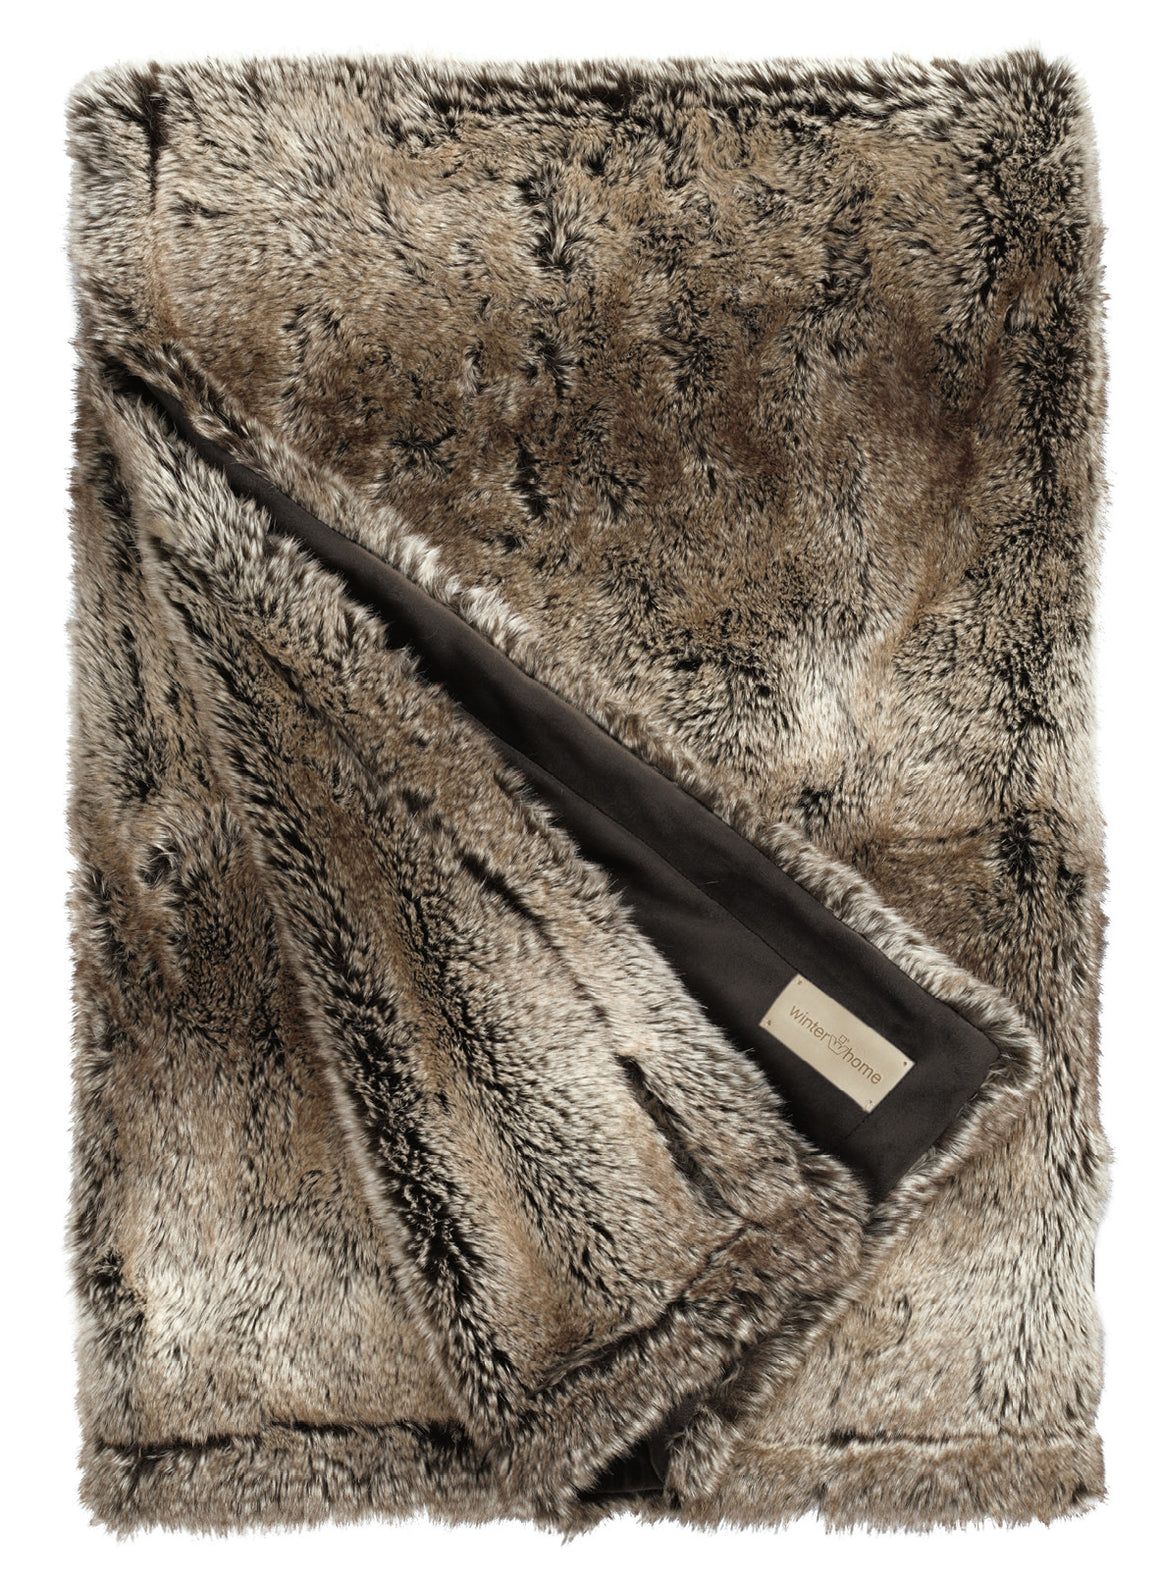 Winterheim-Übergröße beschmiert Yukonwolf überdimensioniert Pelz Winterheim Textil